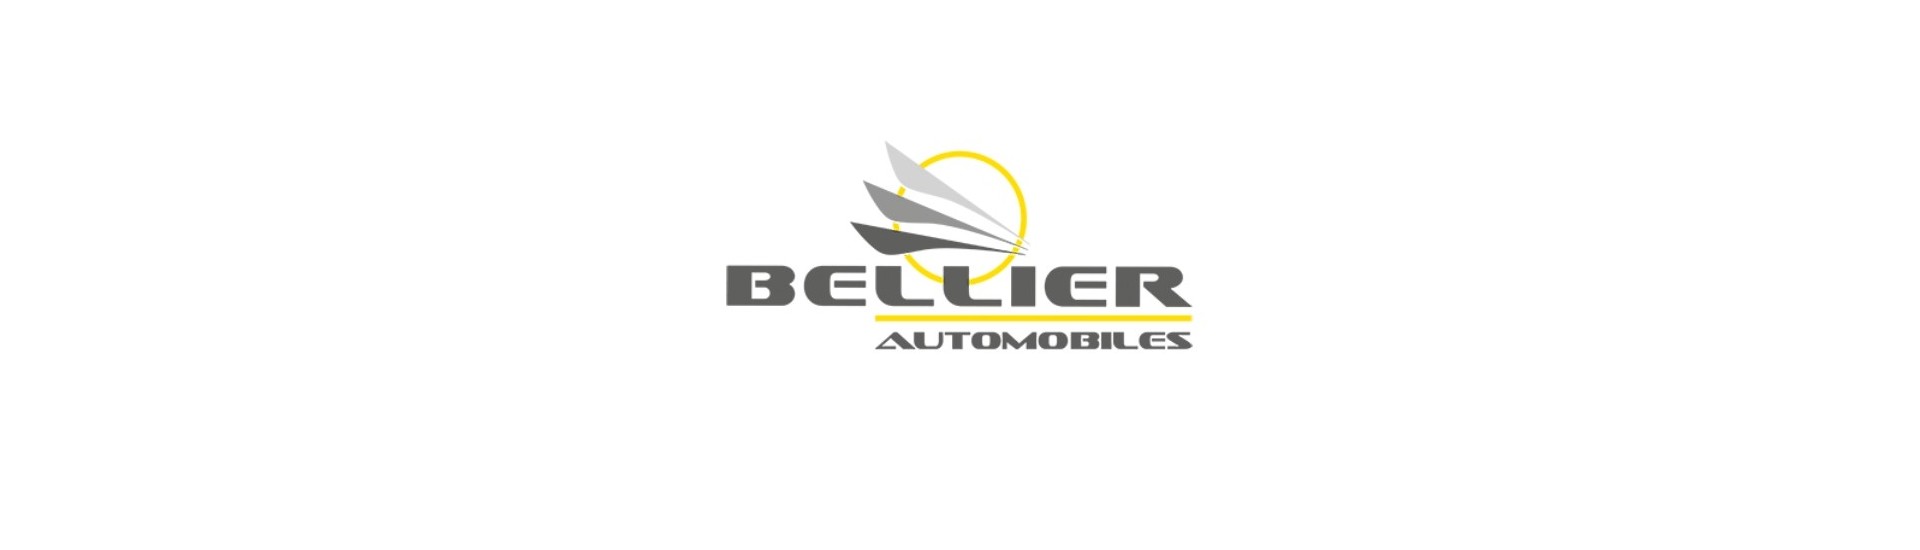 Moottorivaihtoehto parhaalla hinnalla ilman lupaa Bellier